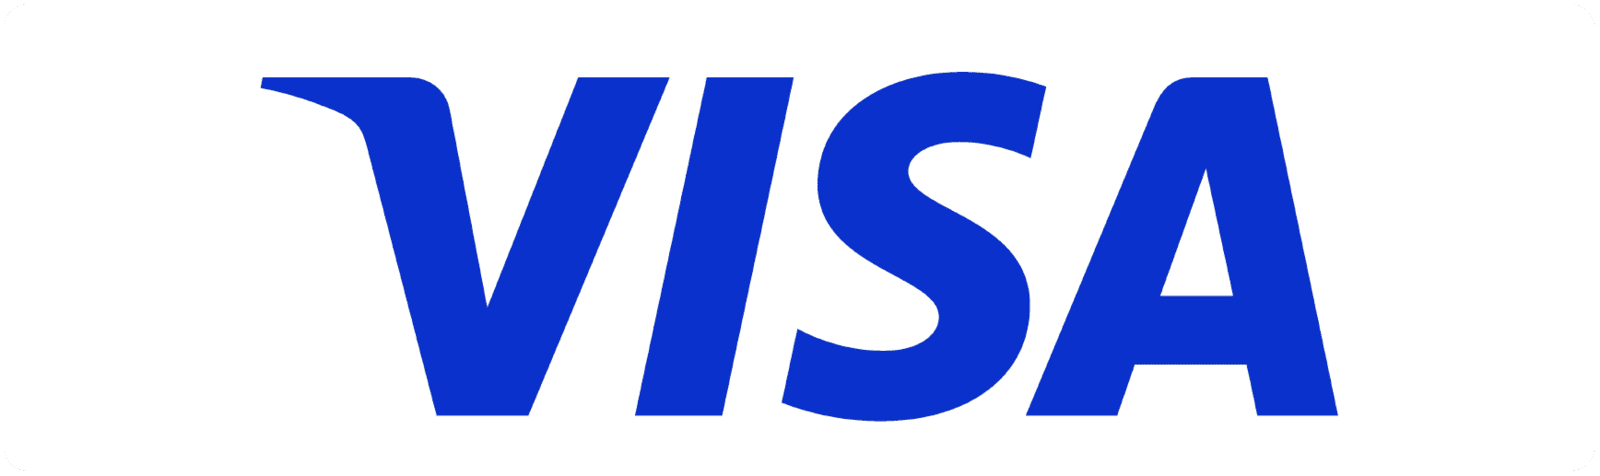 Qntrol akzeptiert Zahlungen per Visa